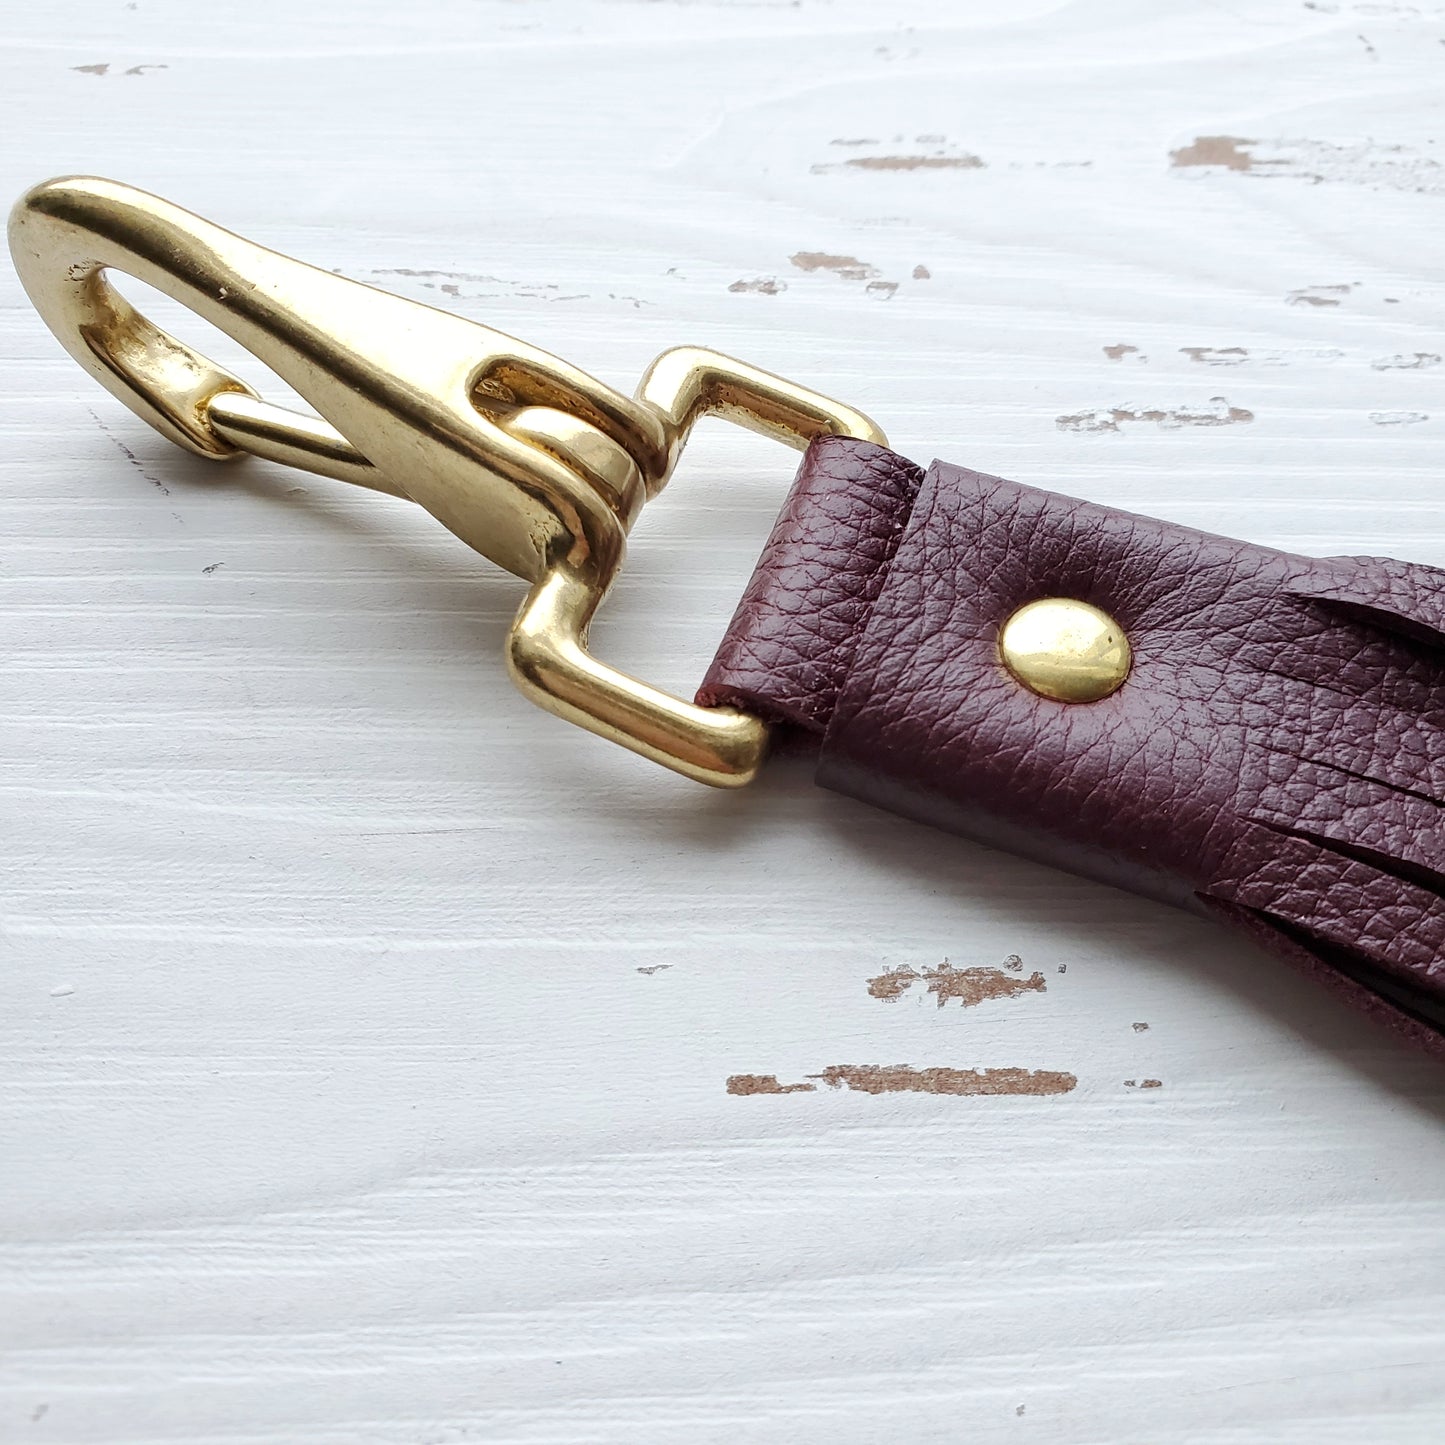 Sleipnir tassle key chain - large